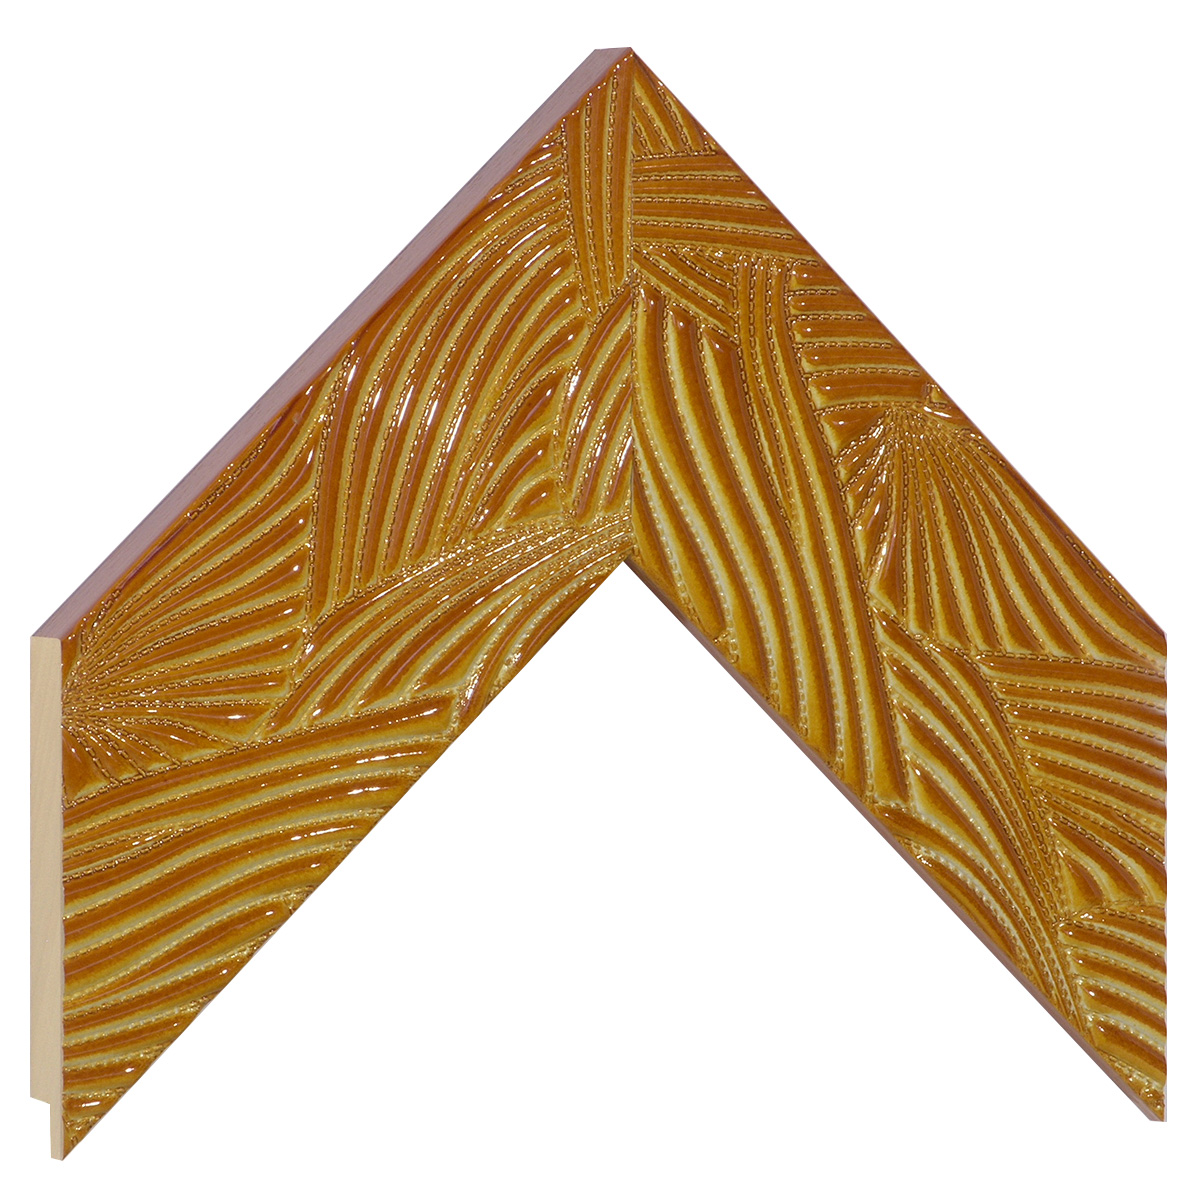 Asta ayous larg. mm 65 - decorazioni in rilievo color ambra - Campione